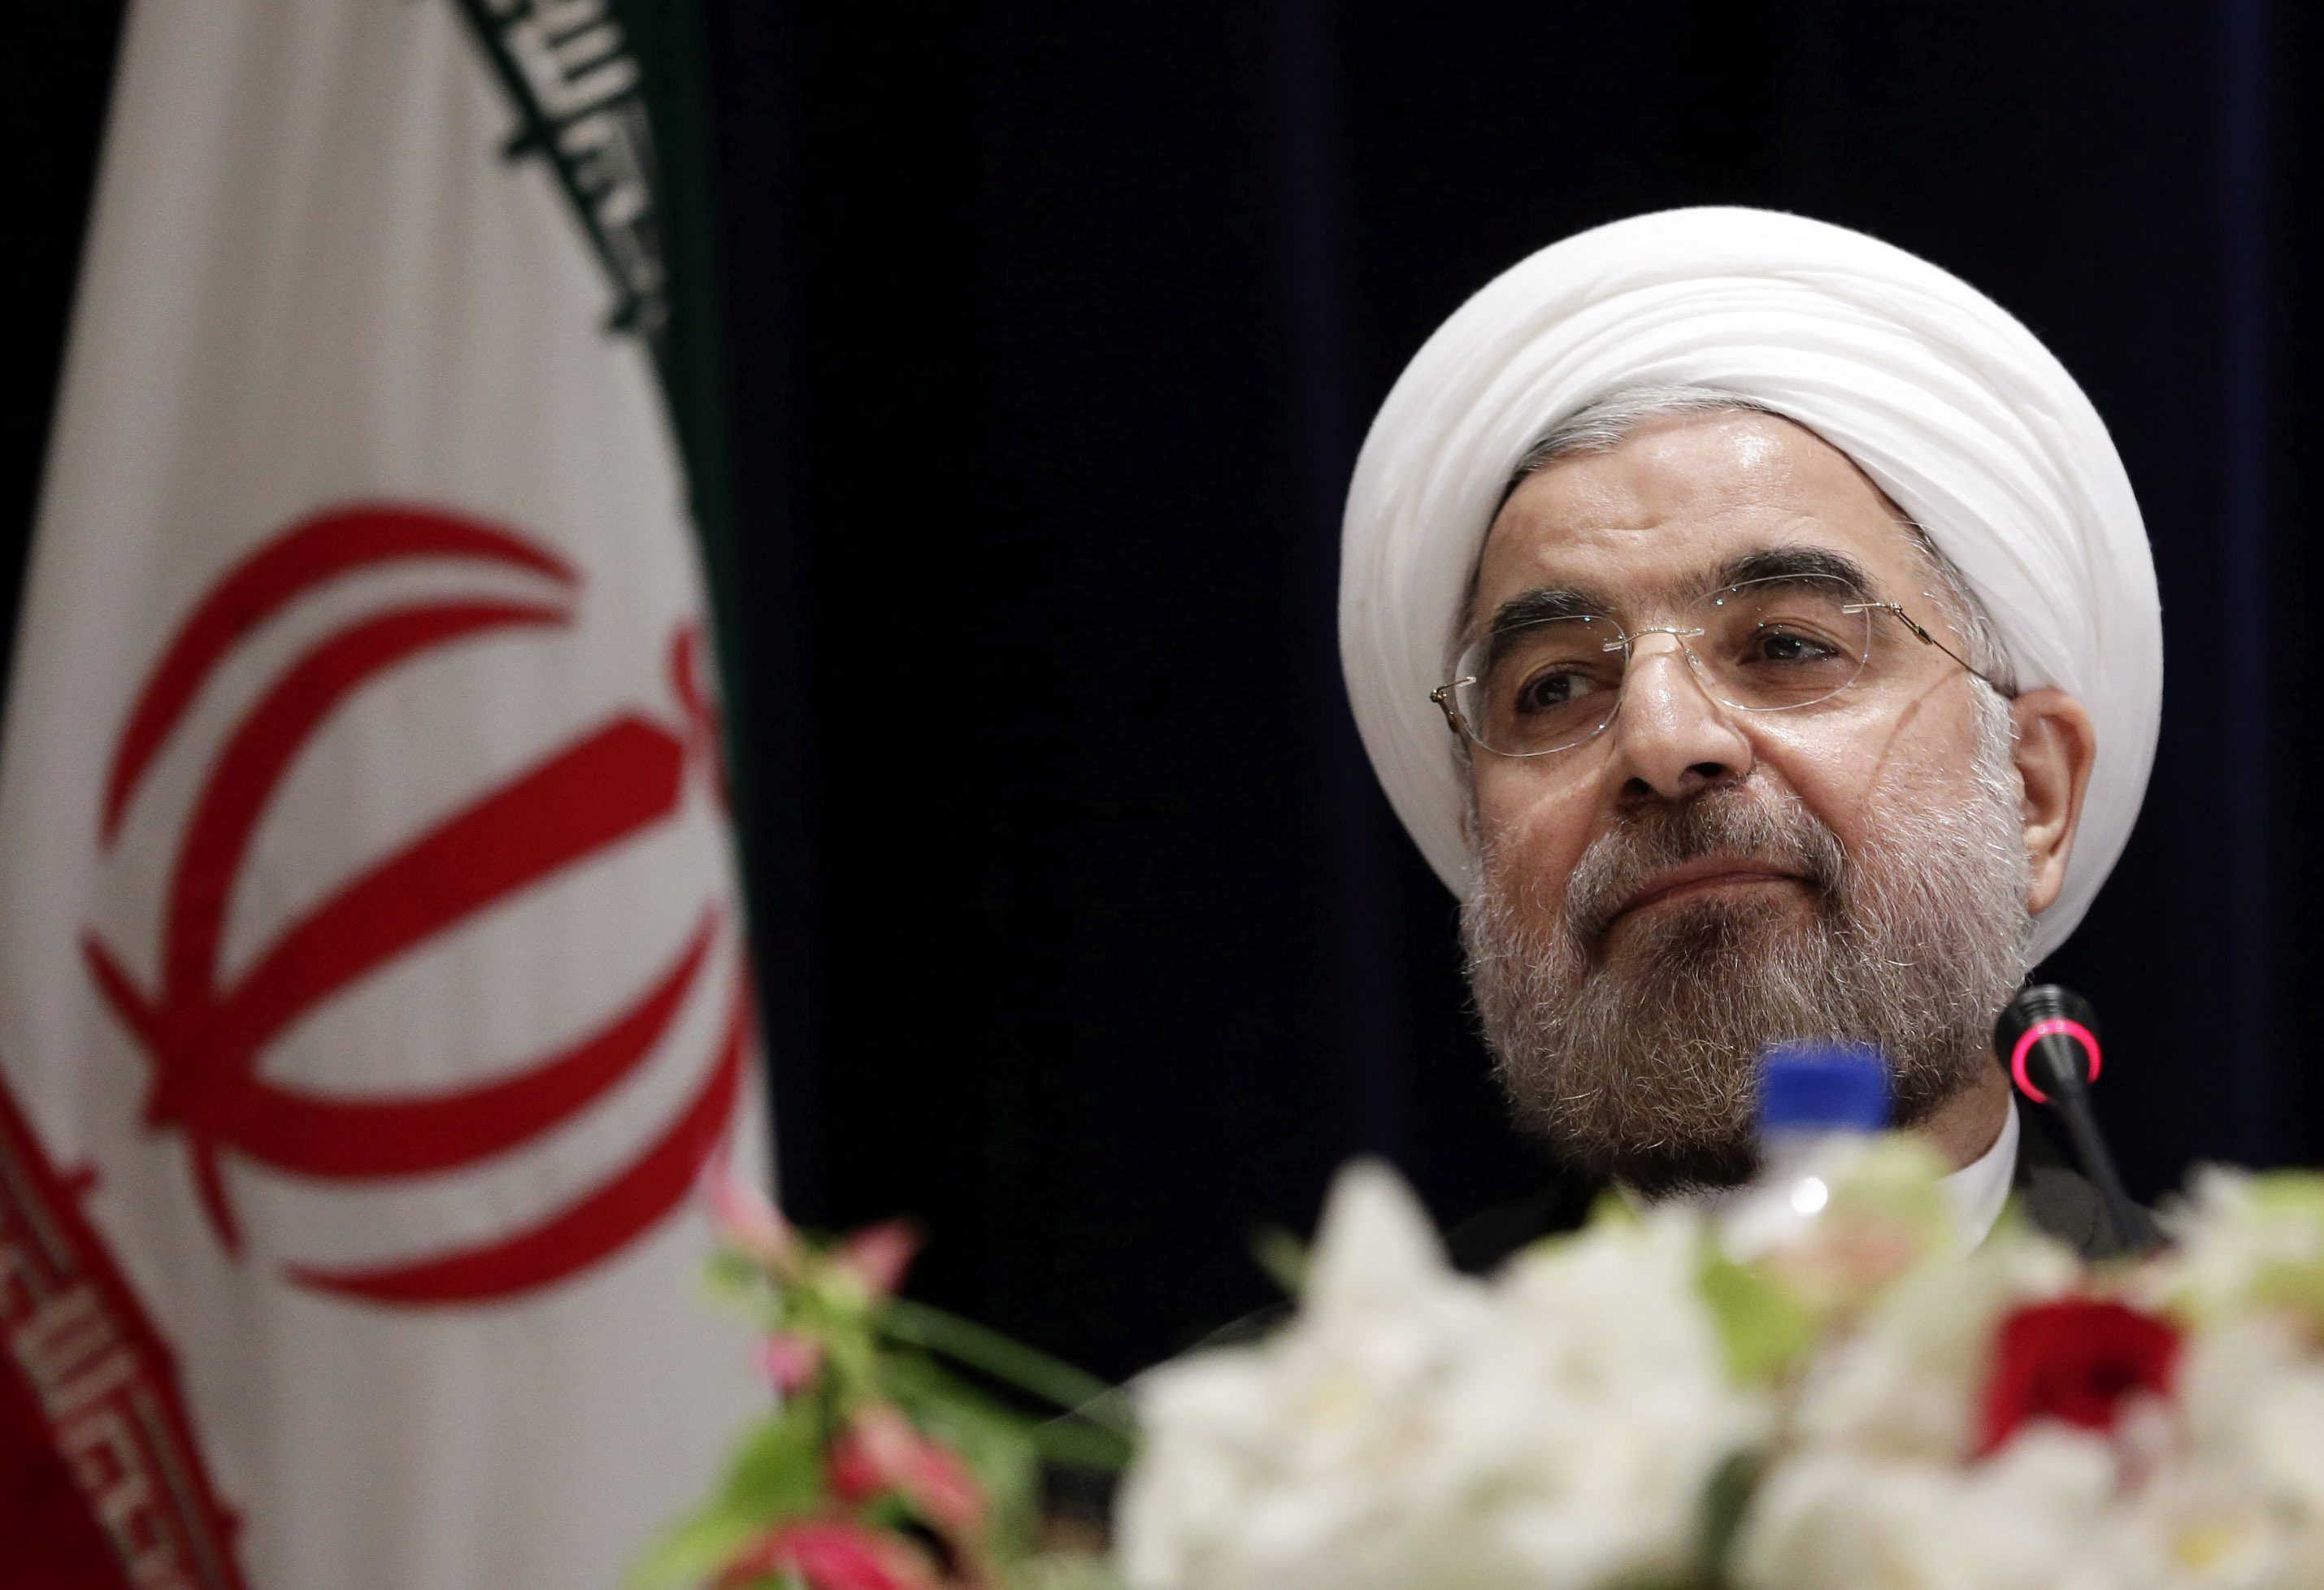 Rohaní cambia el tono de Irán e inicia tímidos cambios en 3 meses de gobierno